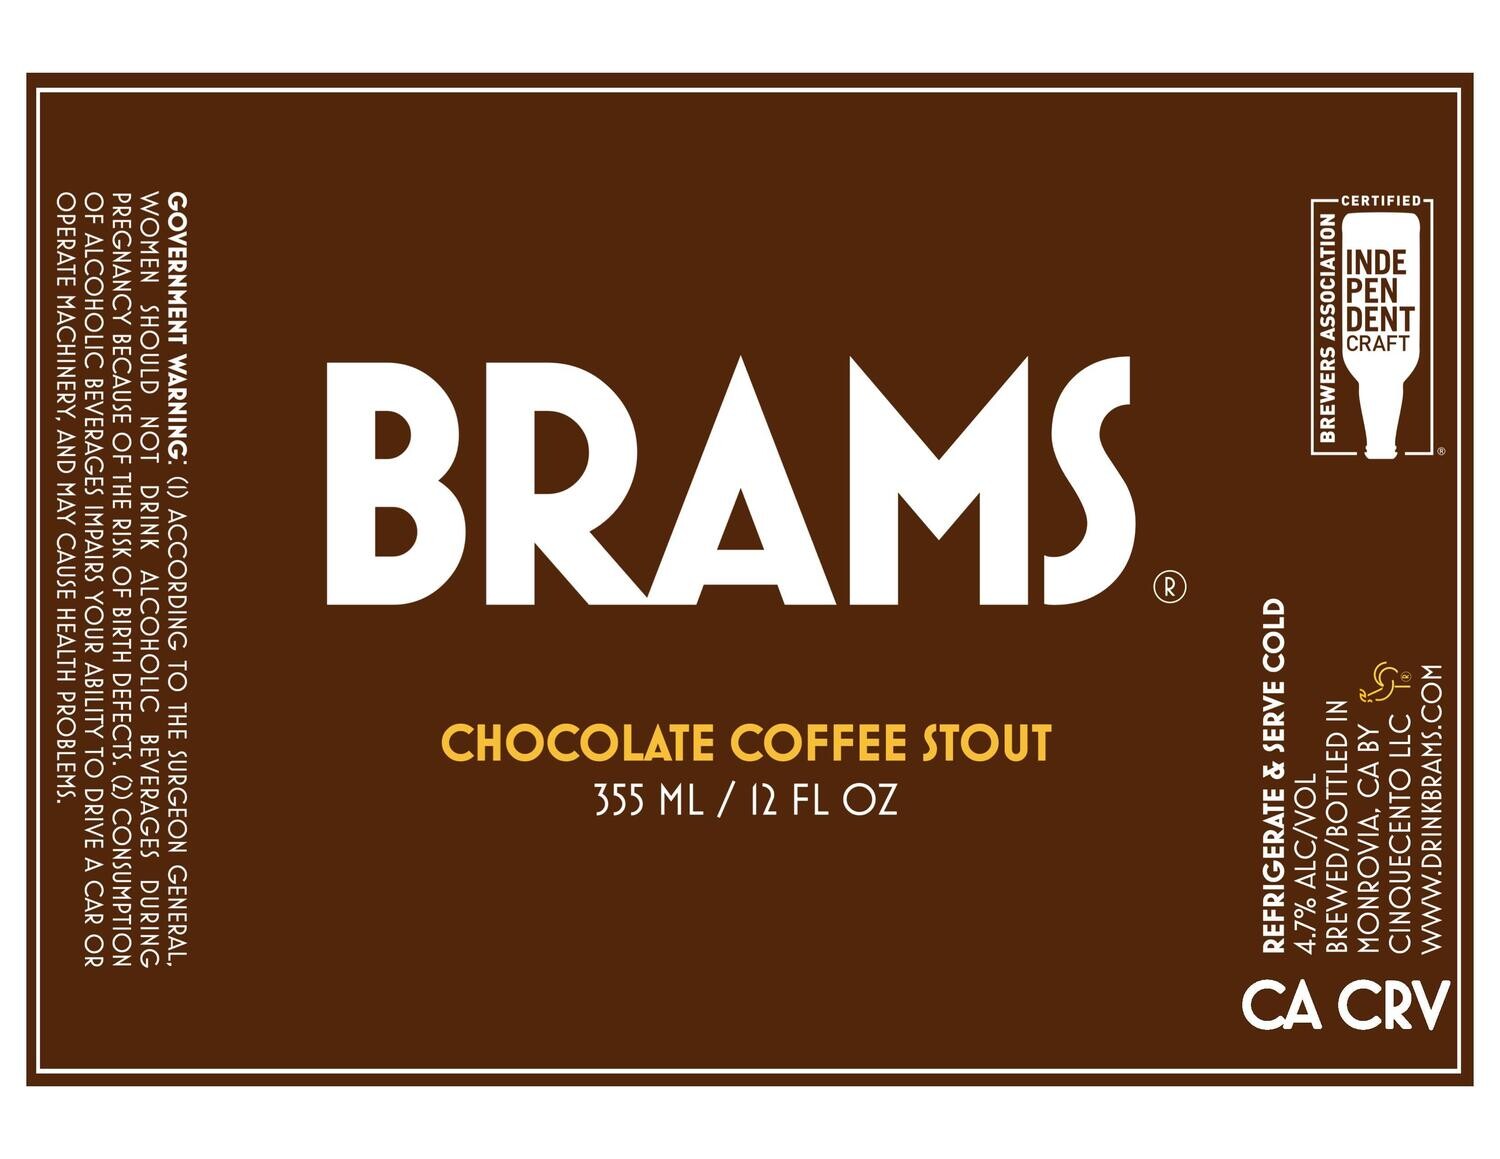 BRAMS Chocolate Coffee Stout